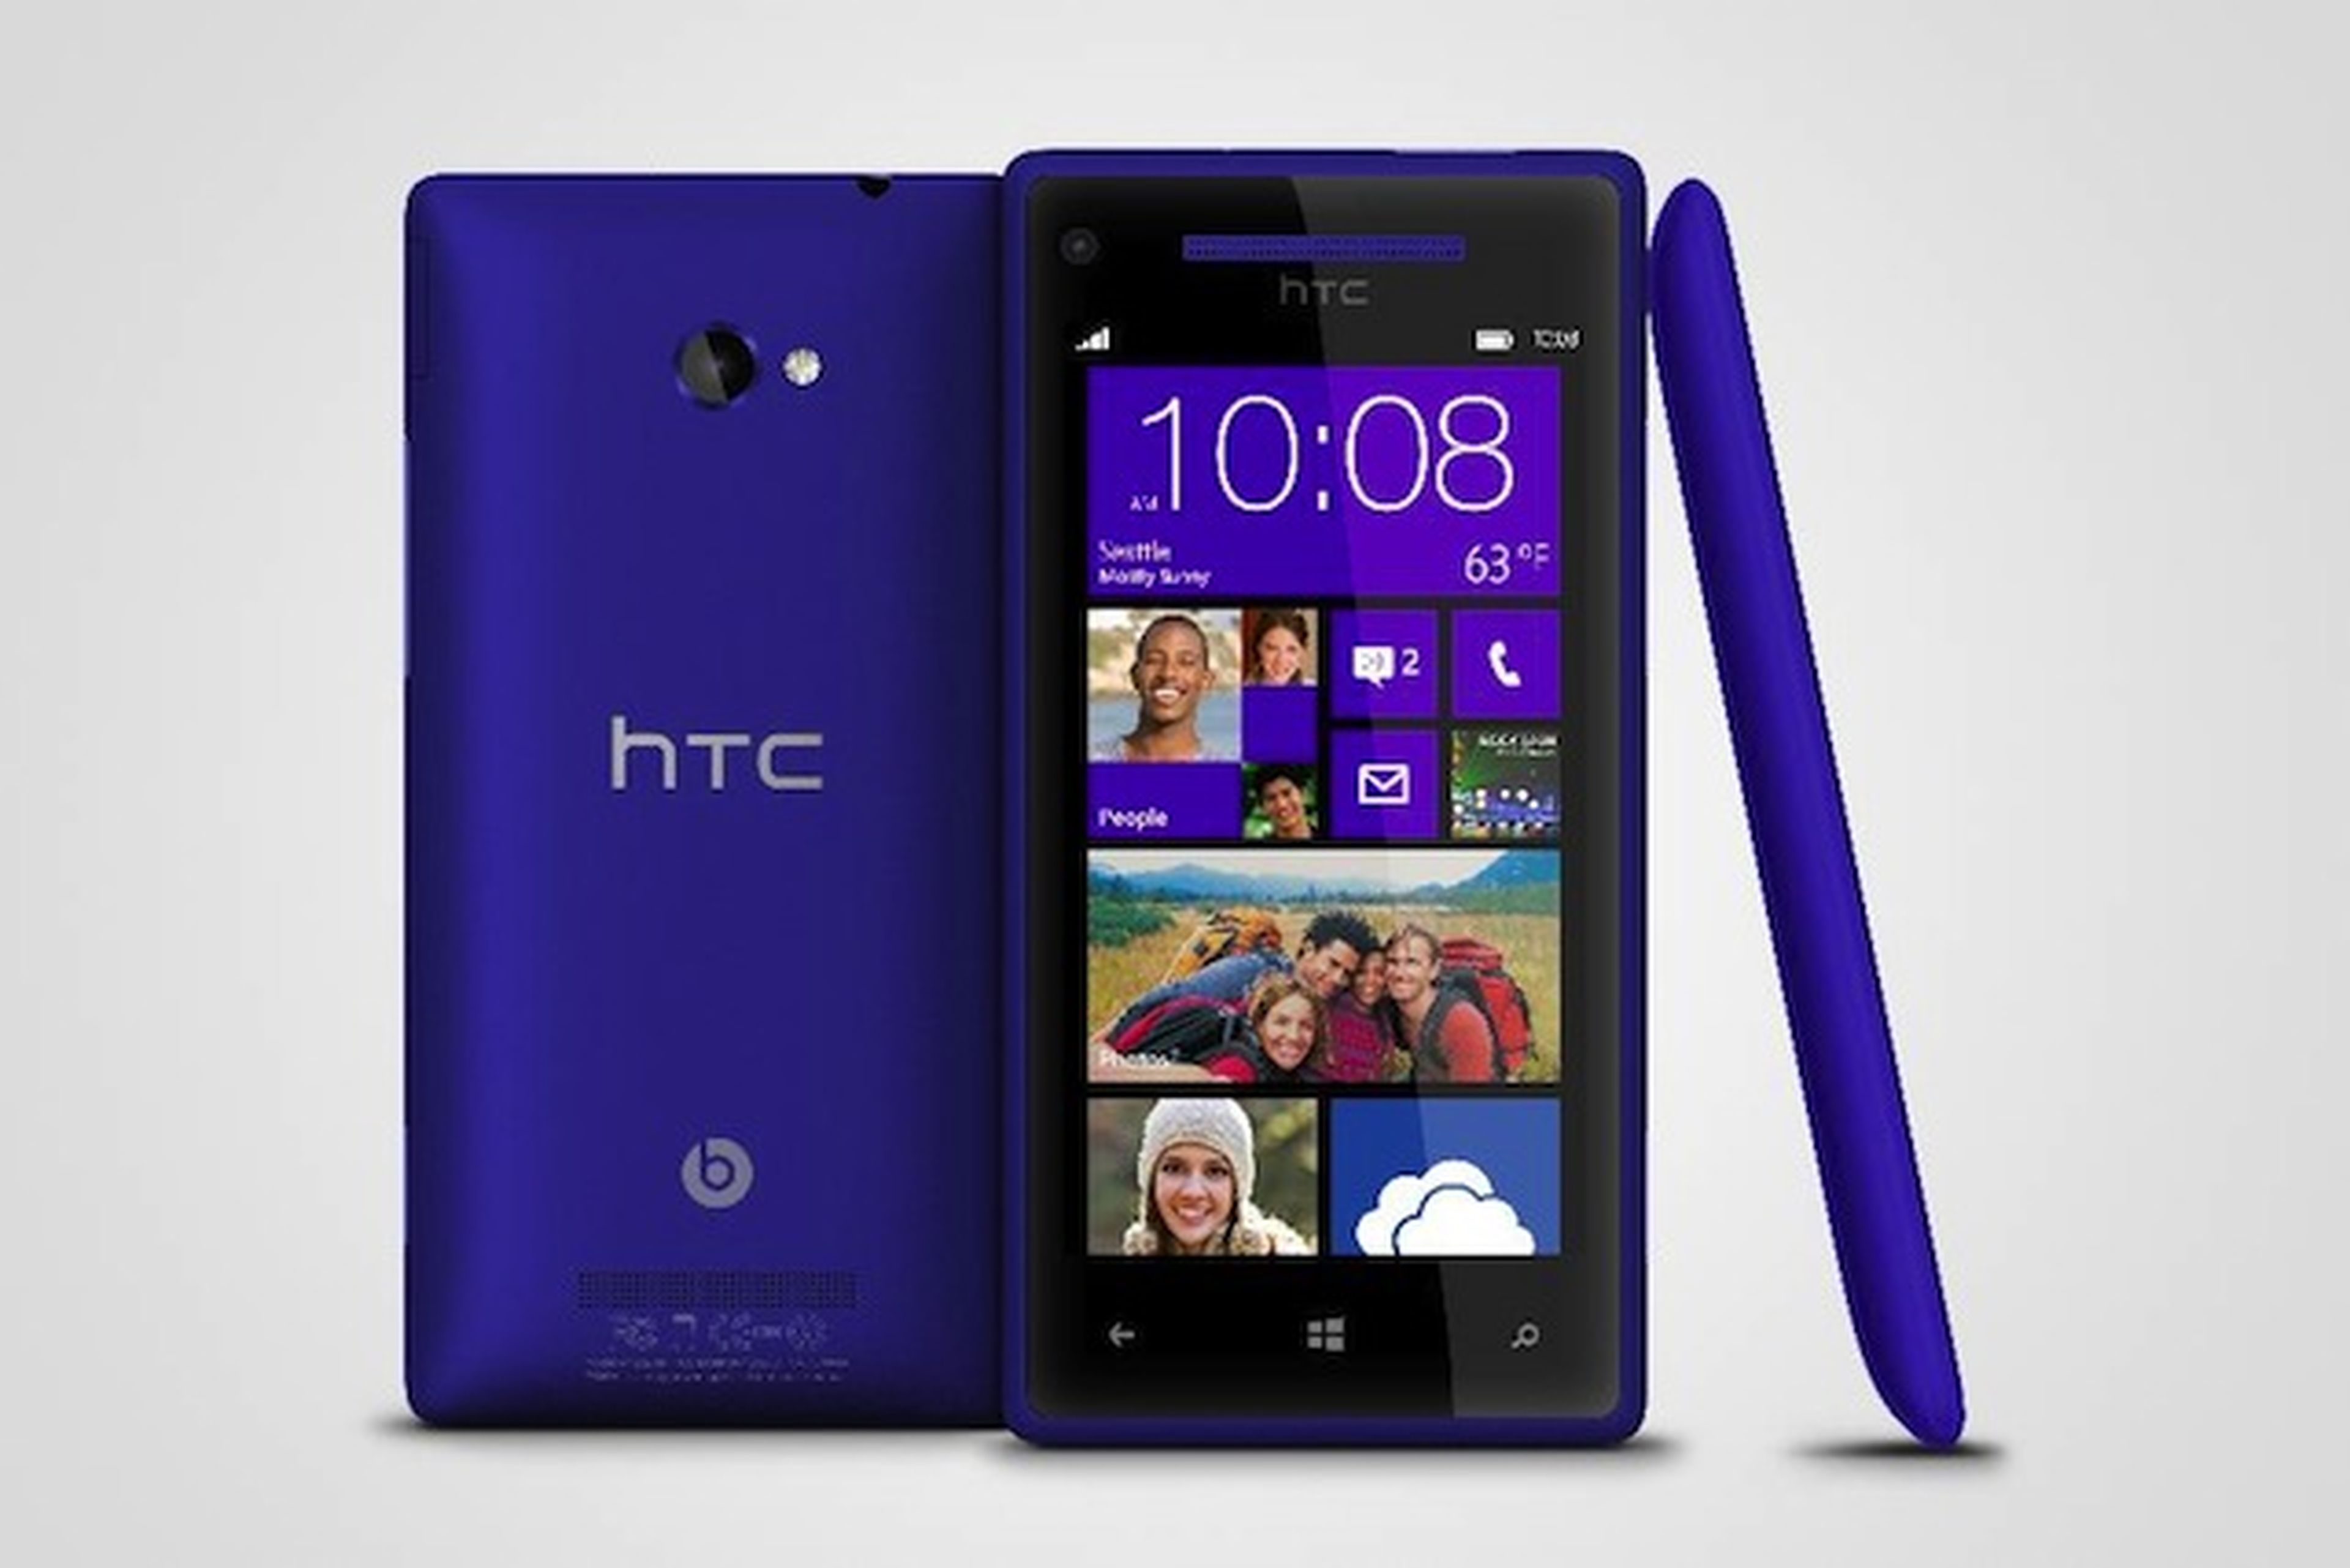 HTC 8 XT